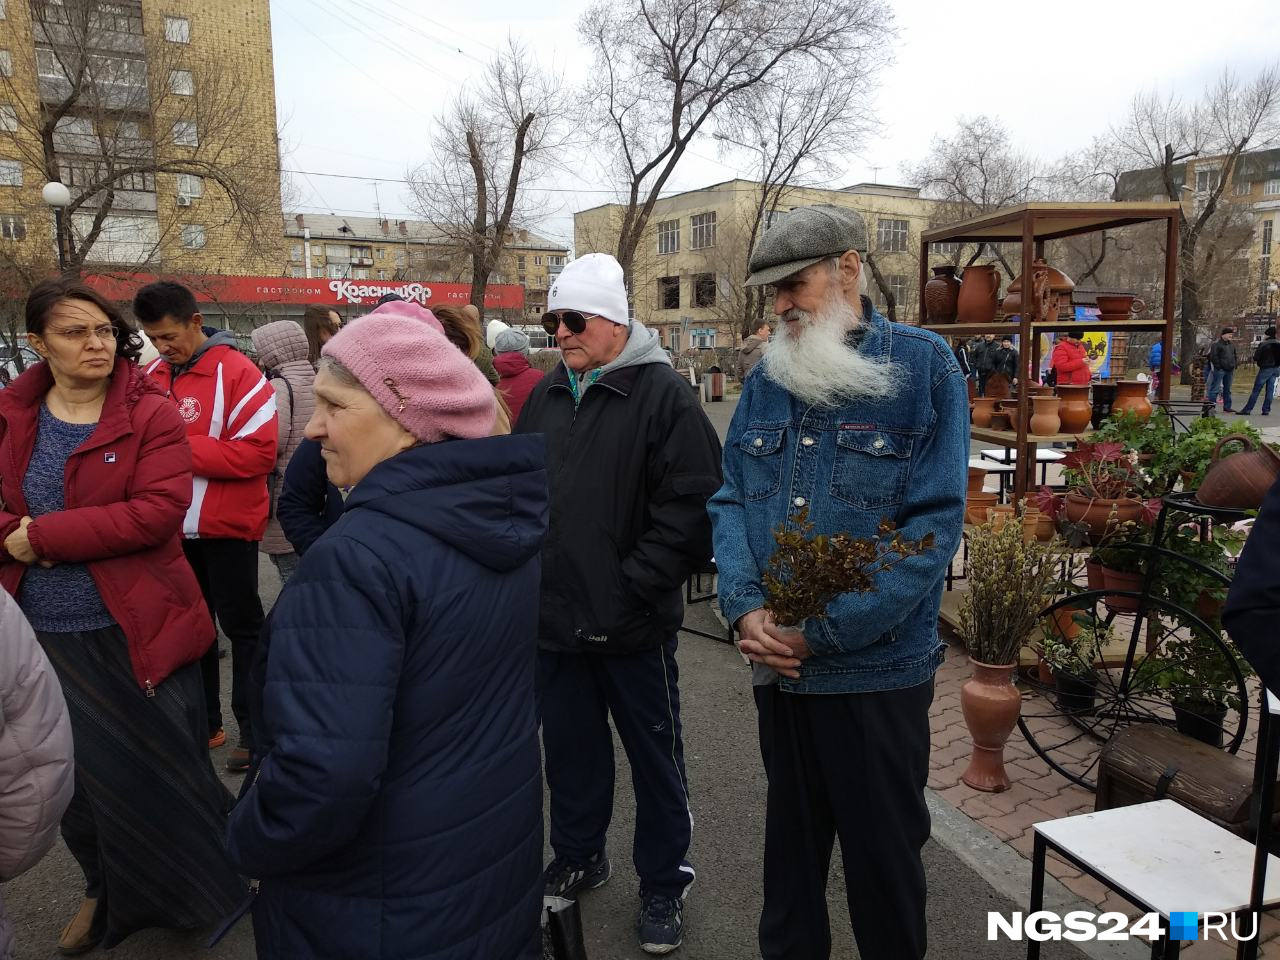 Дед Борис — самый известный Дед Мороз в Красноярске — раздает багульник